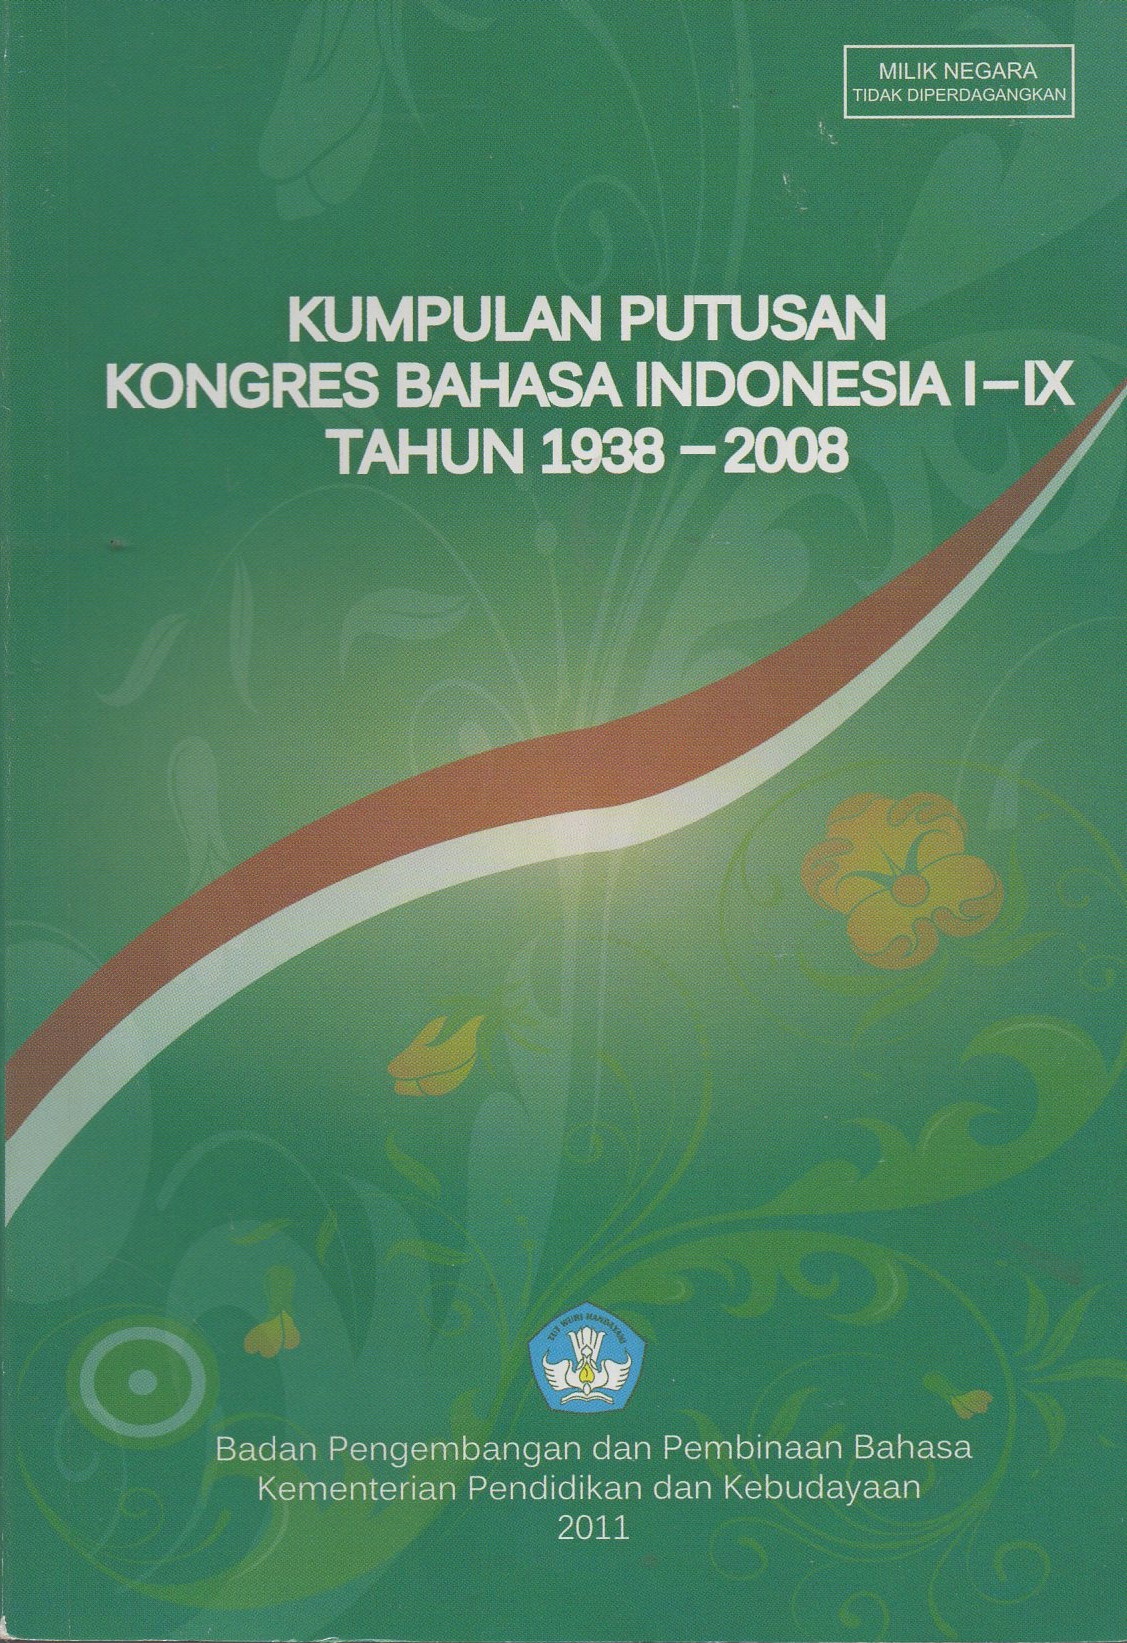 Kumpulan putusan kongres Bahasa Indonesia I-IX tahun 1938-2008